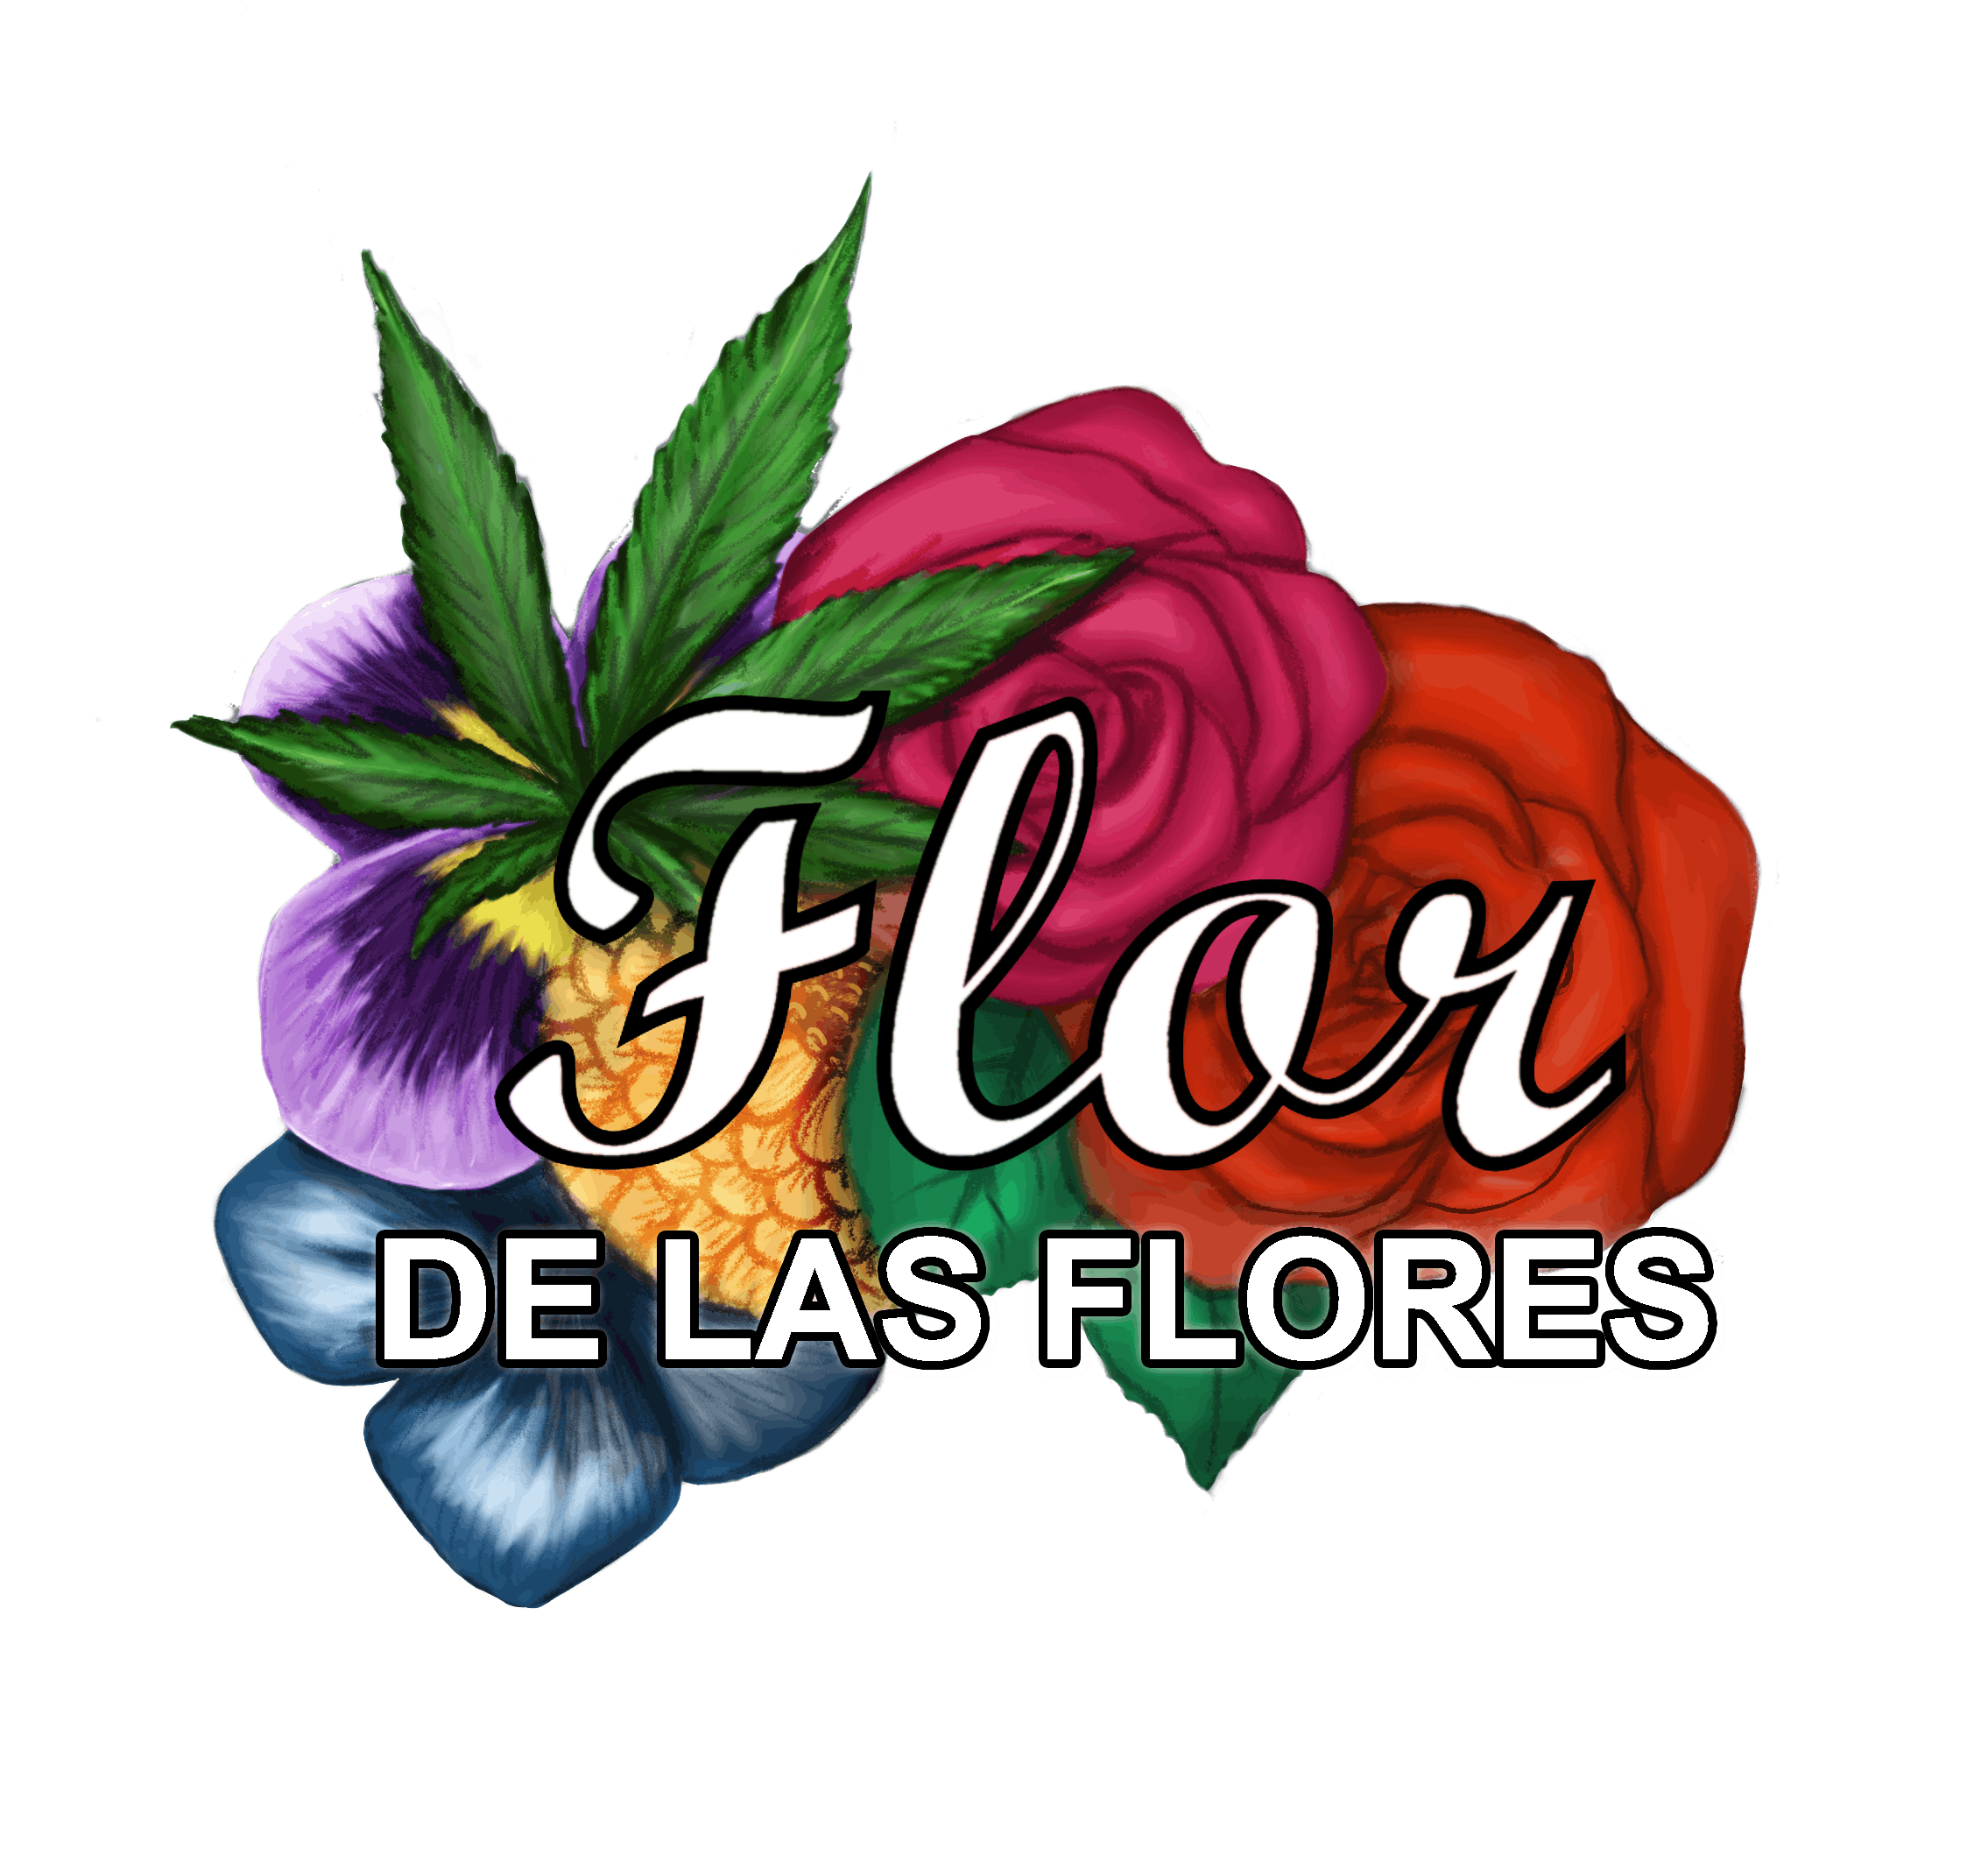 Flor De Las Flores logo